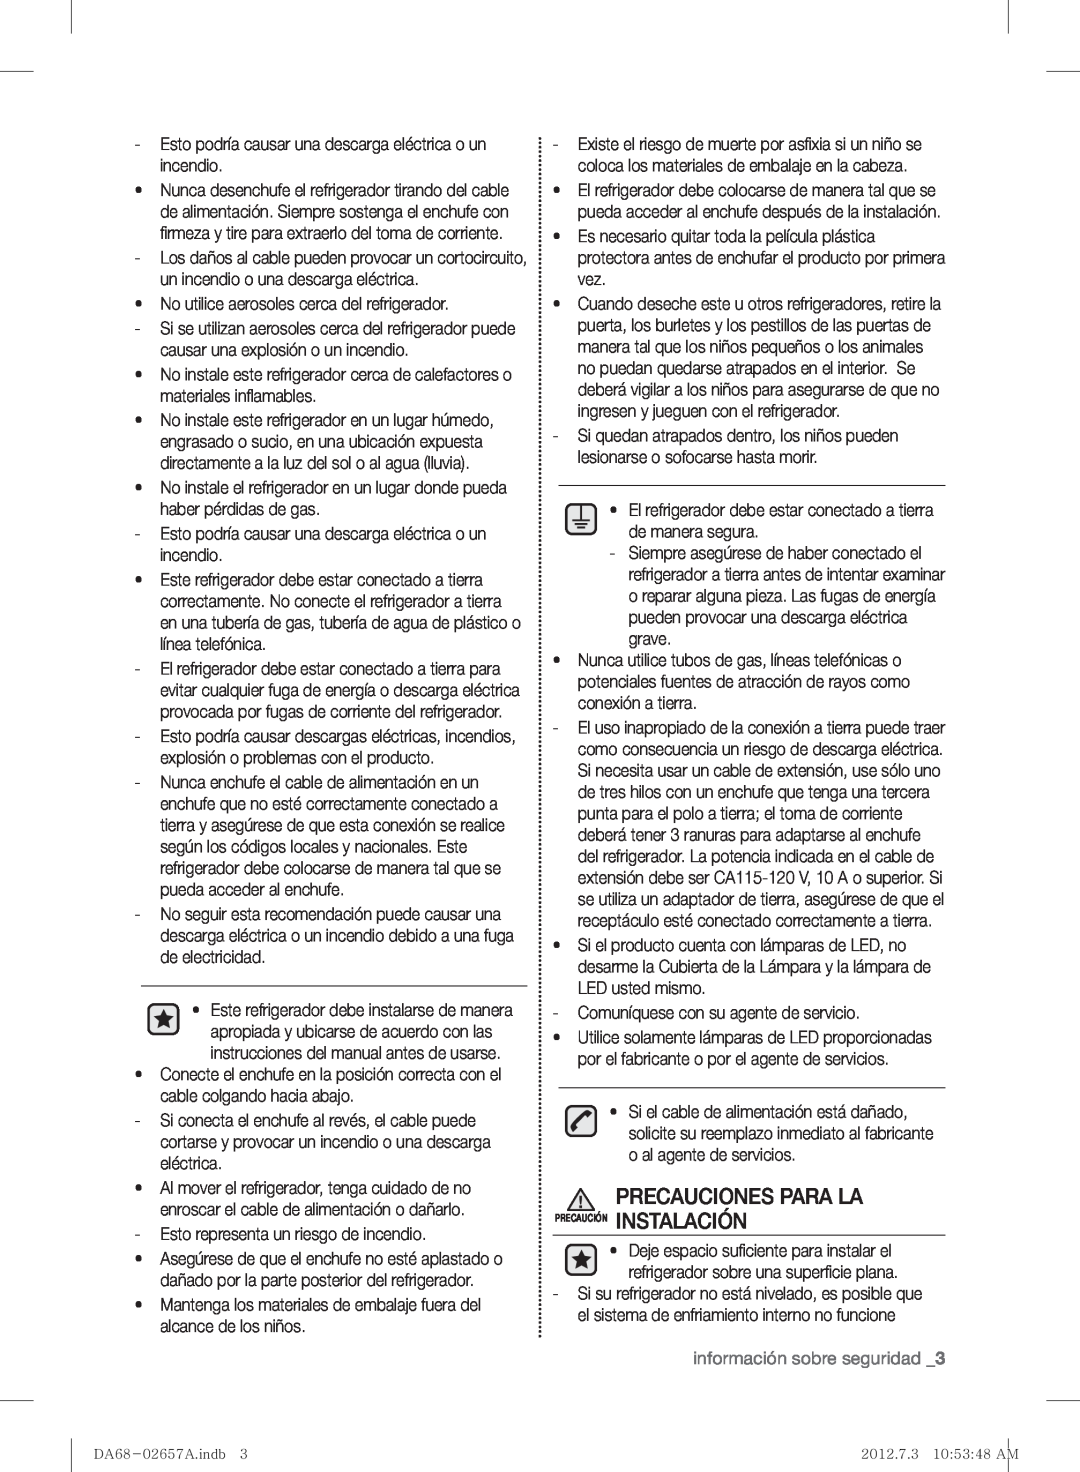 Samsung RF221NCTABC user manual Precauciones Para La Precaución Instalación, información sobre seguridad 